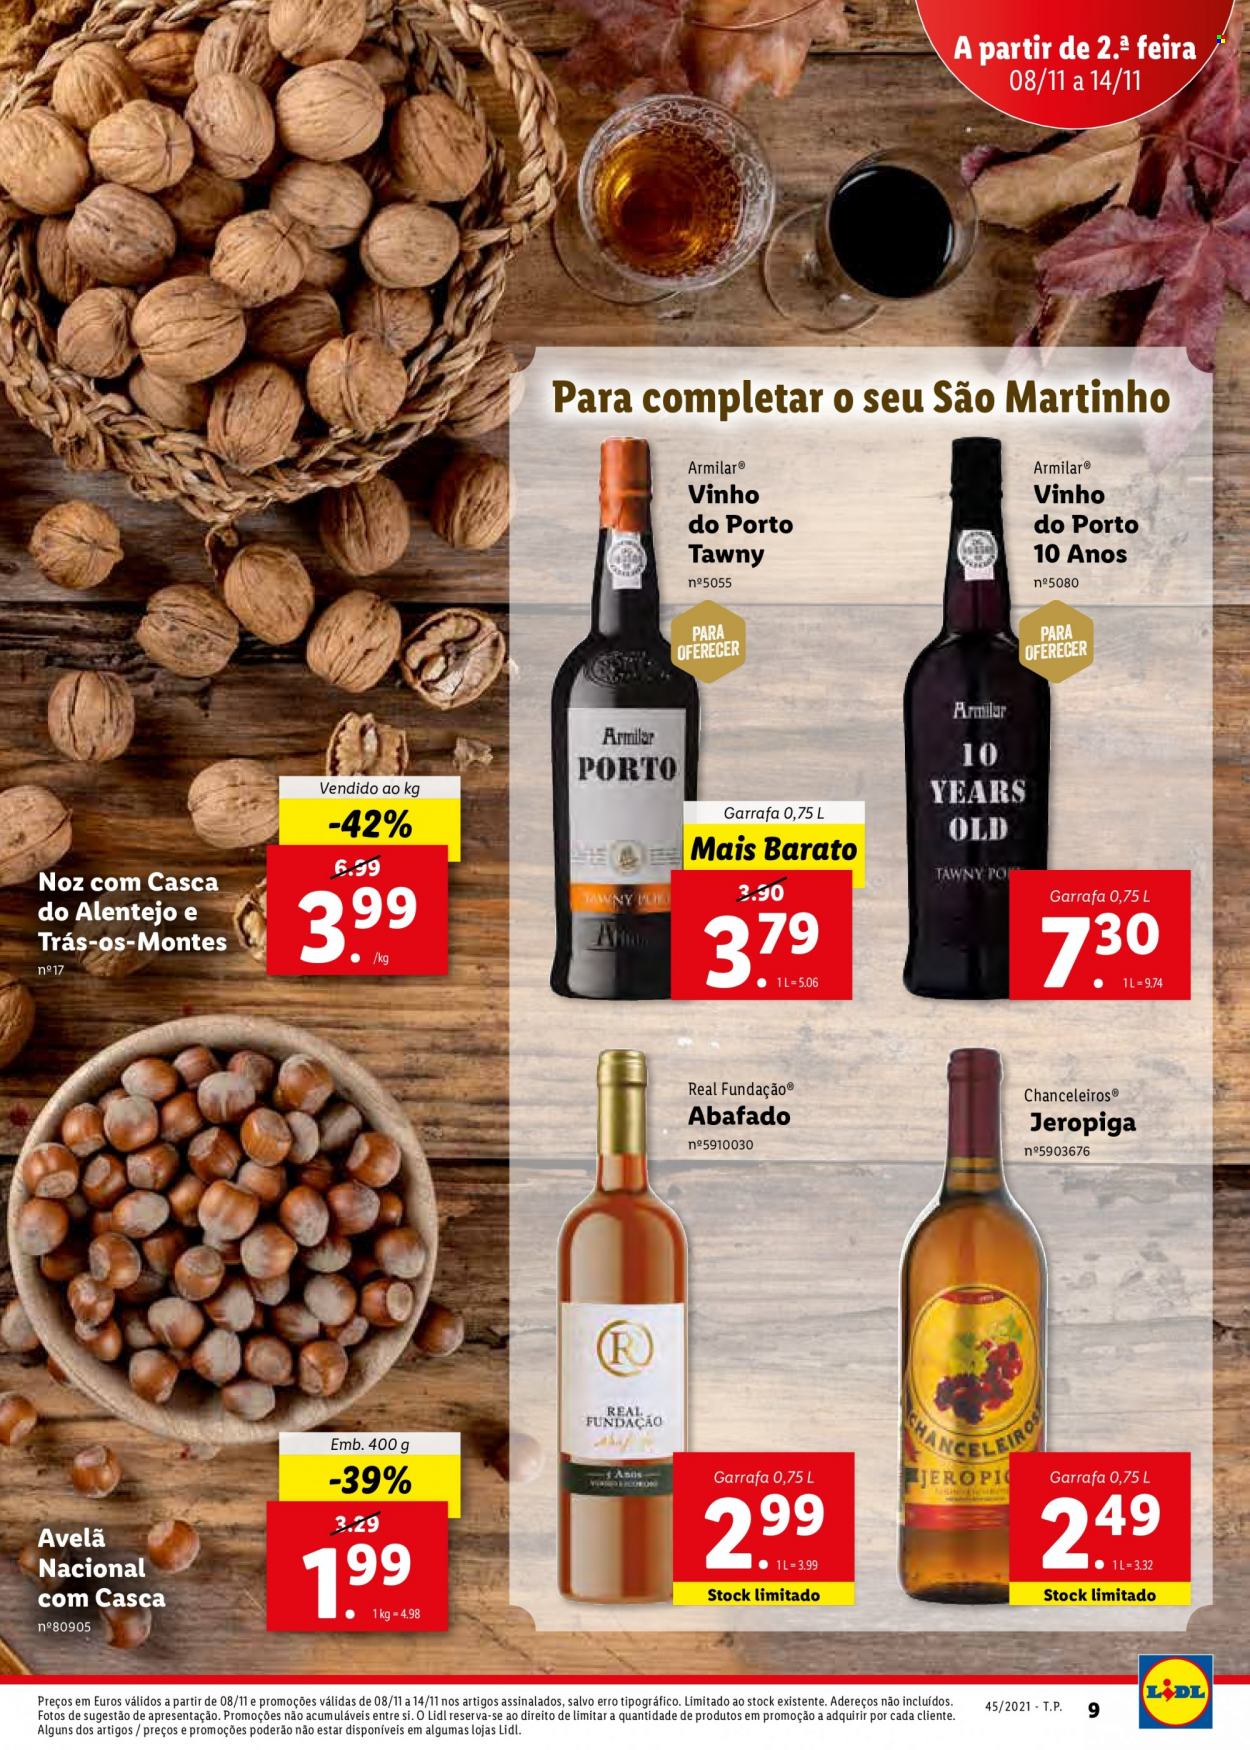 thumbnail - Folheto Lidl - 8.11.2021 - 14.11.2021 - Produtos em promoção - avelã, vinho, vinho do Porto. Página 27.